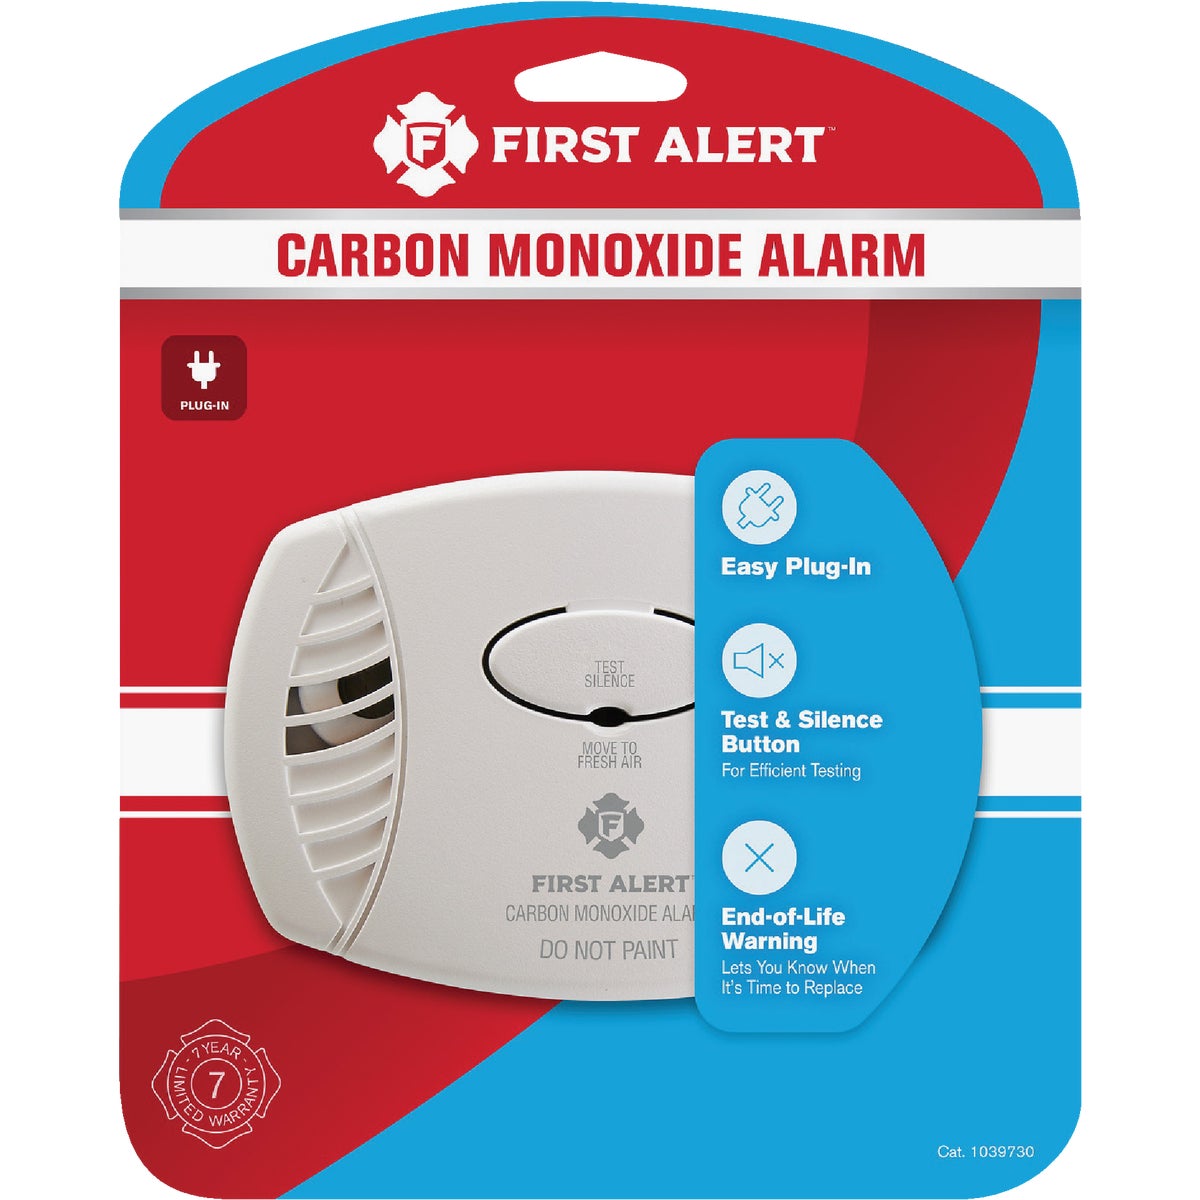 Item 406945, Plug-In CO (carbon monoxide) alarm utilizes an electrochemical carbon 